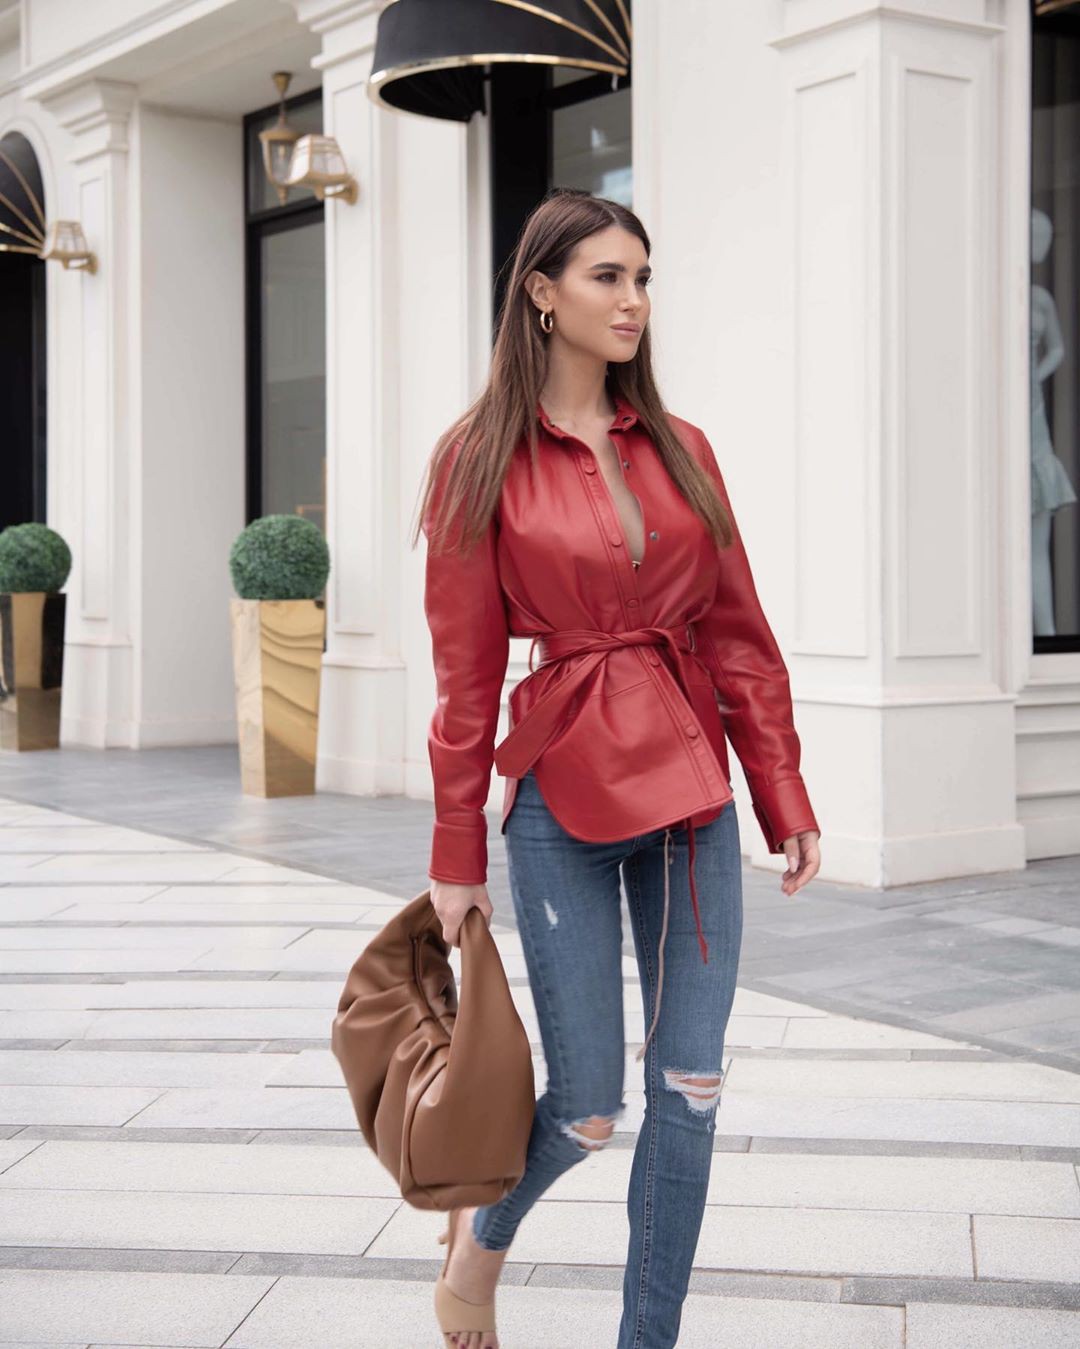 Granate y cuero marrón, jeans, ideas de vestuario.: chicas de instagram,  Traje Granate Y Marrón  